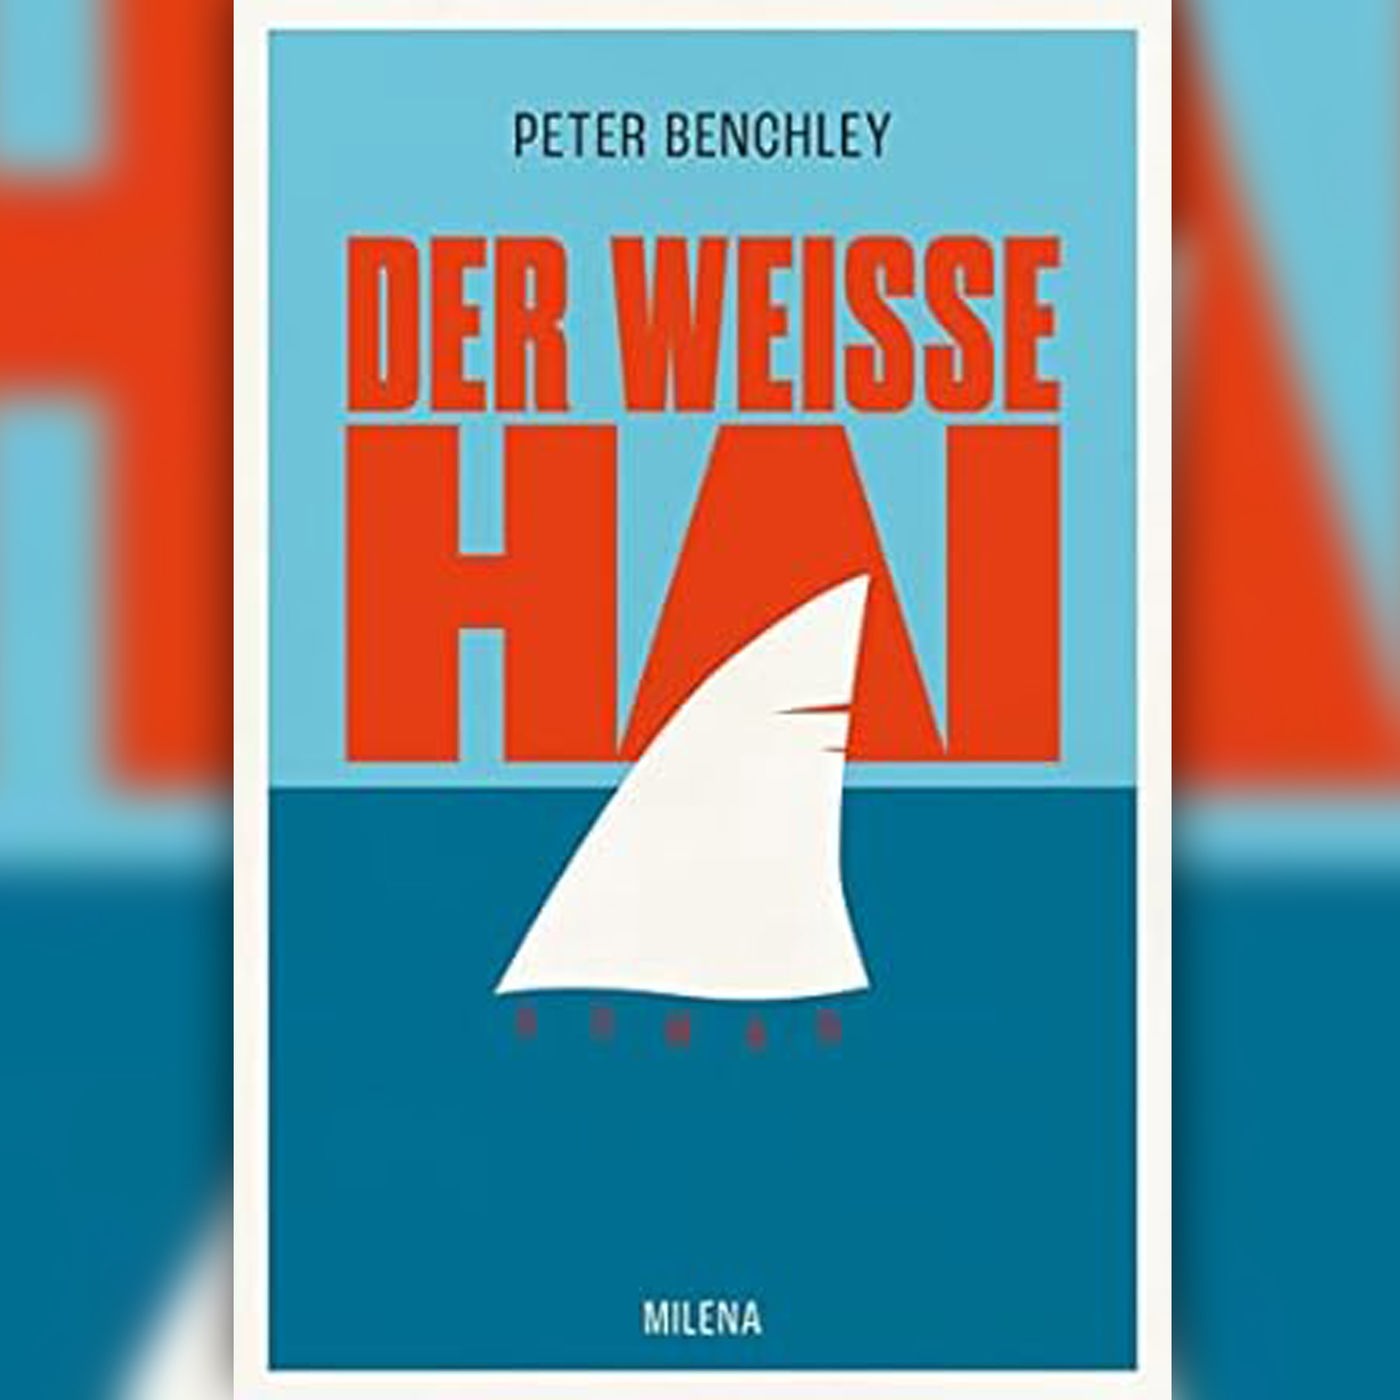 ”Der weiße Hai” von Peter Benchley